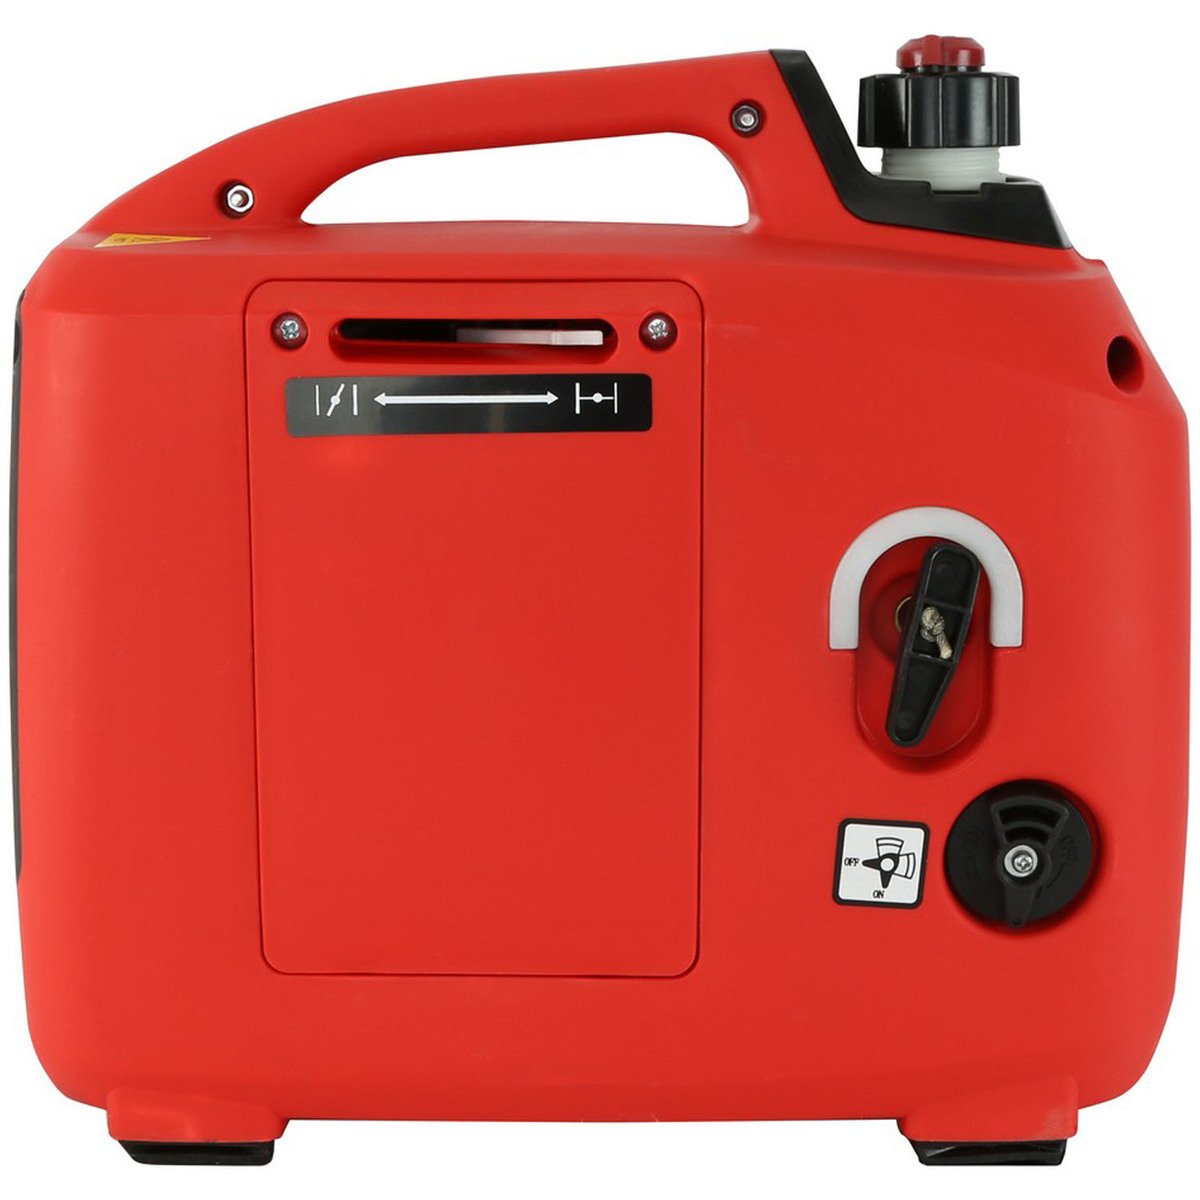 Ikon Generator IK-800G Online at Best Price | Power Tools | UAE